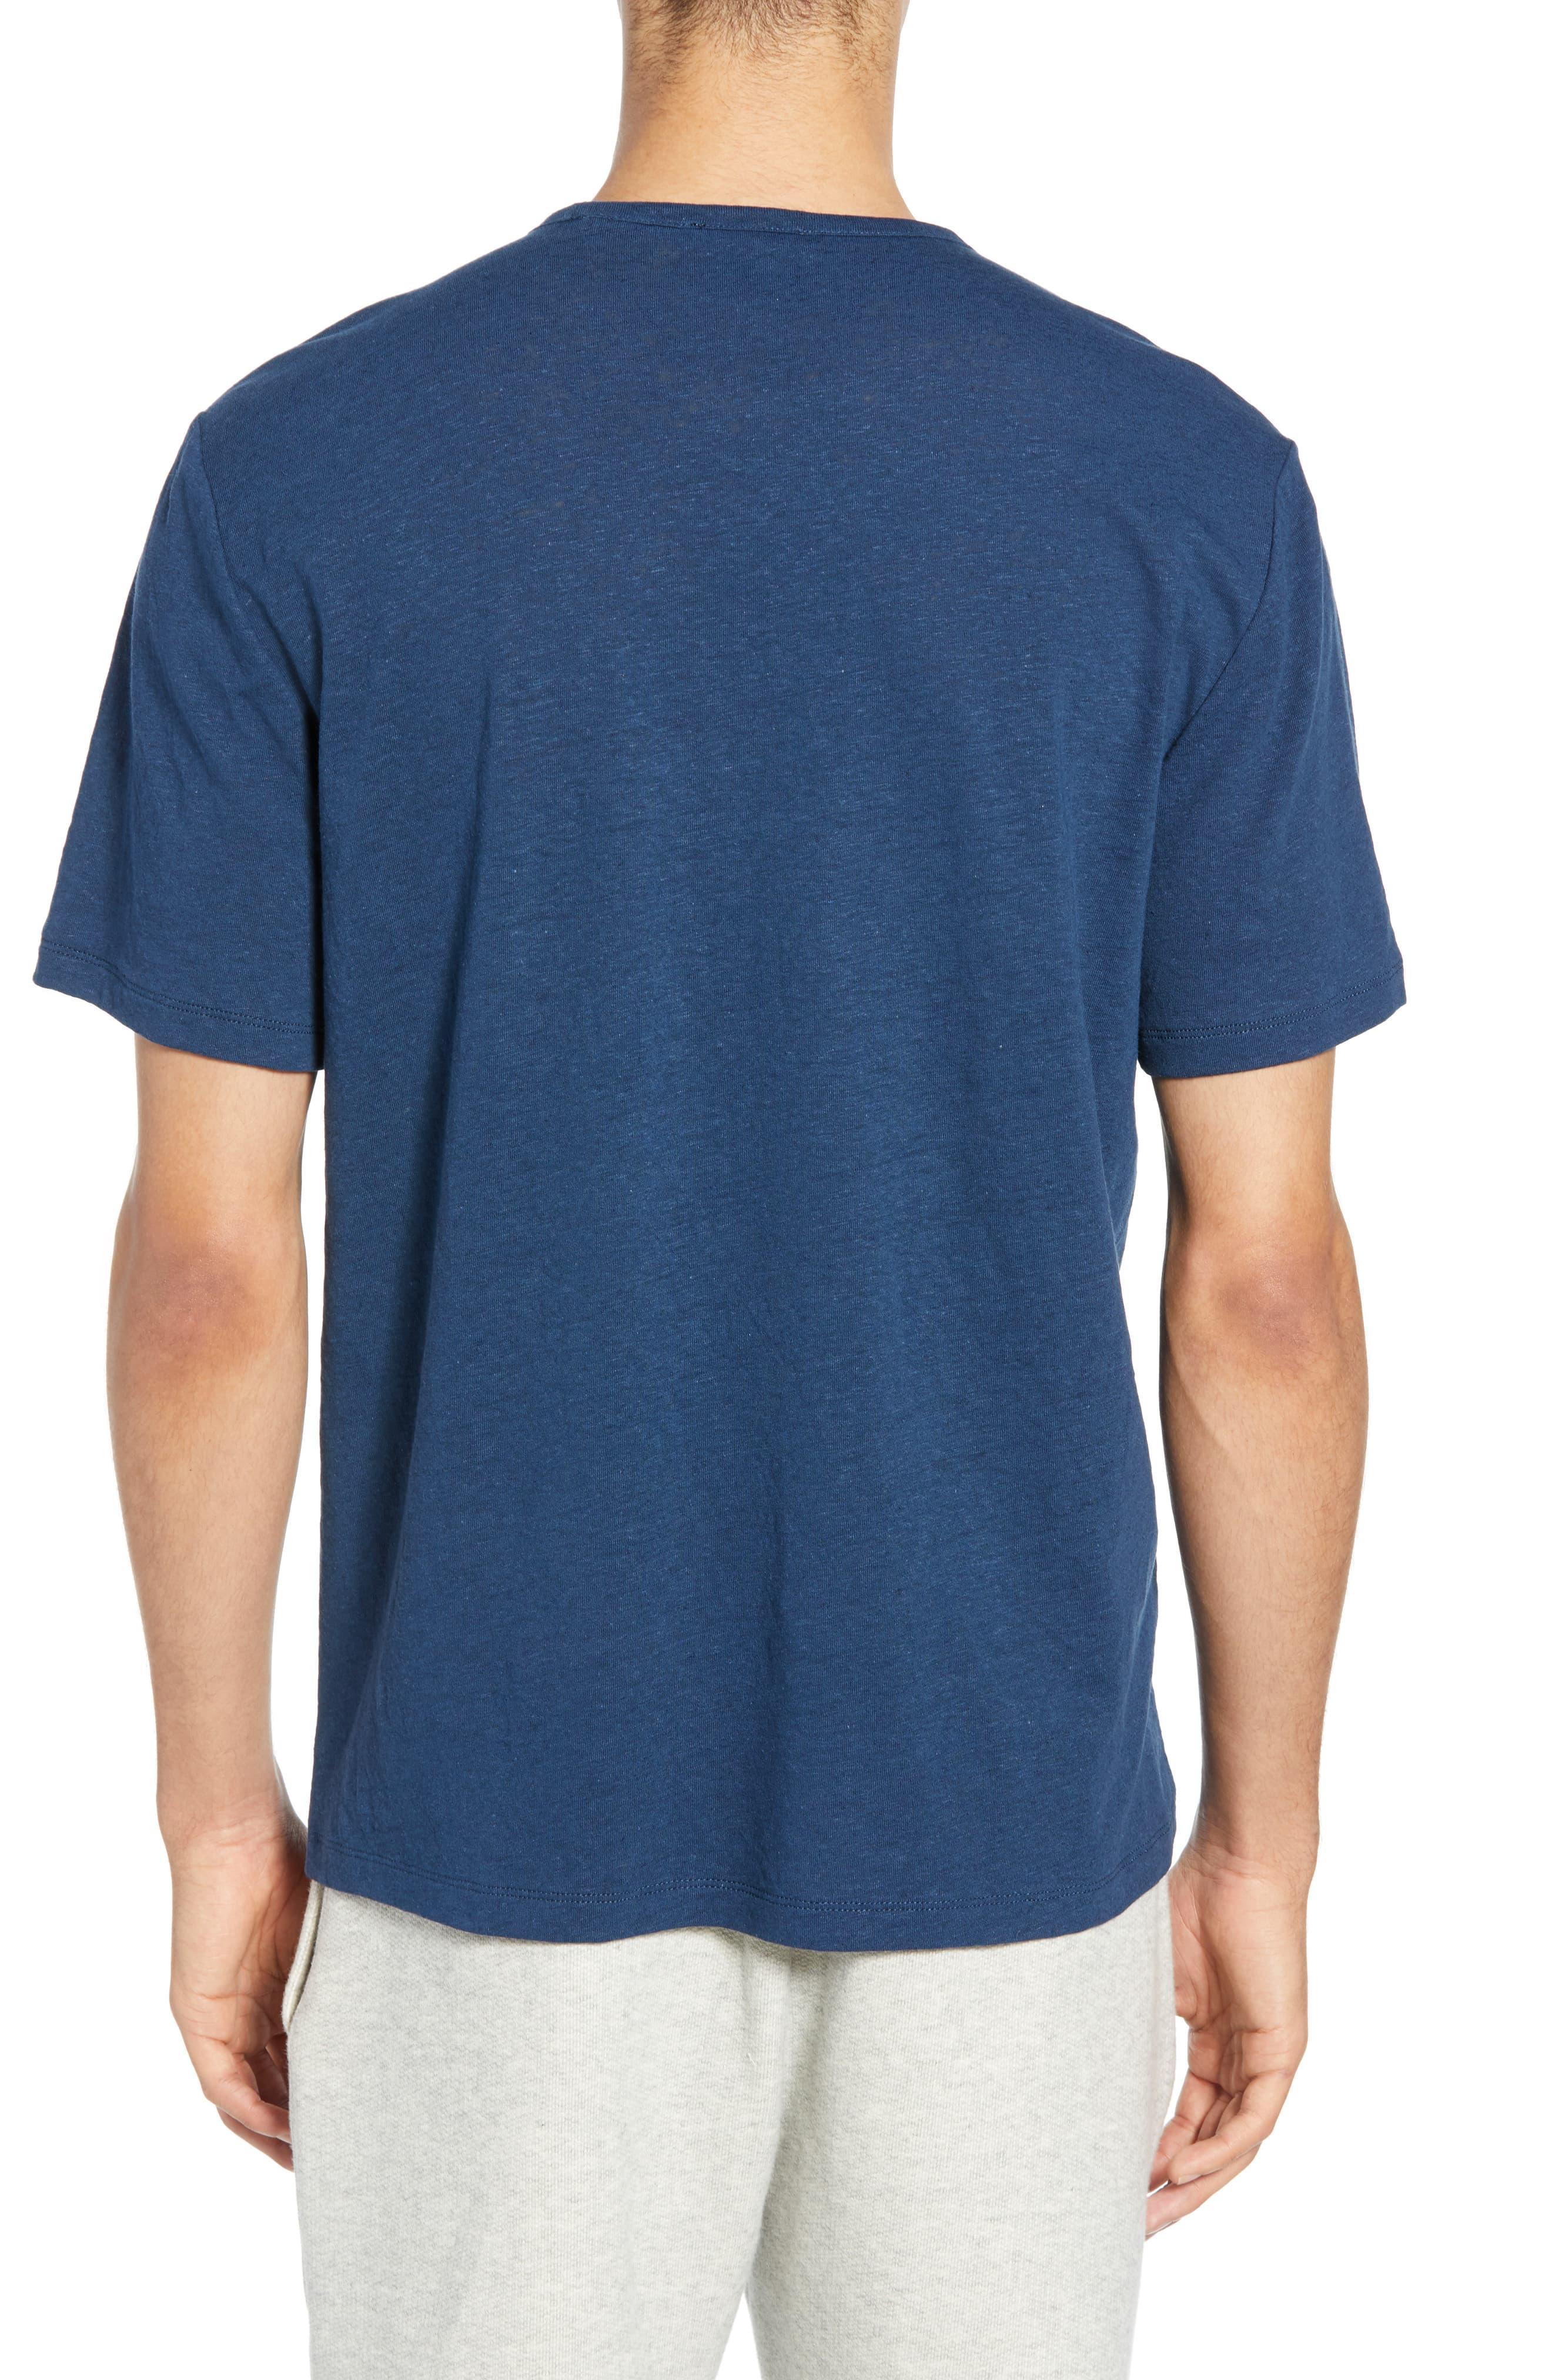 Vince Slim Fit Linen & Cotton T-shirt in Blue for Men - Lyst